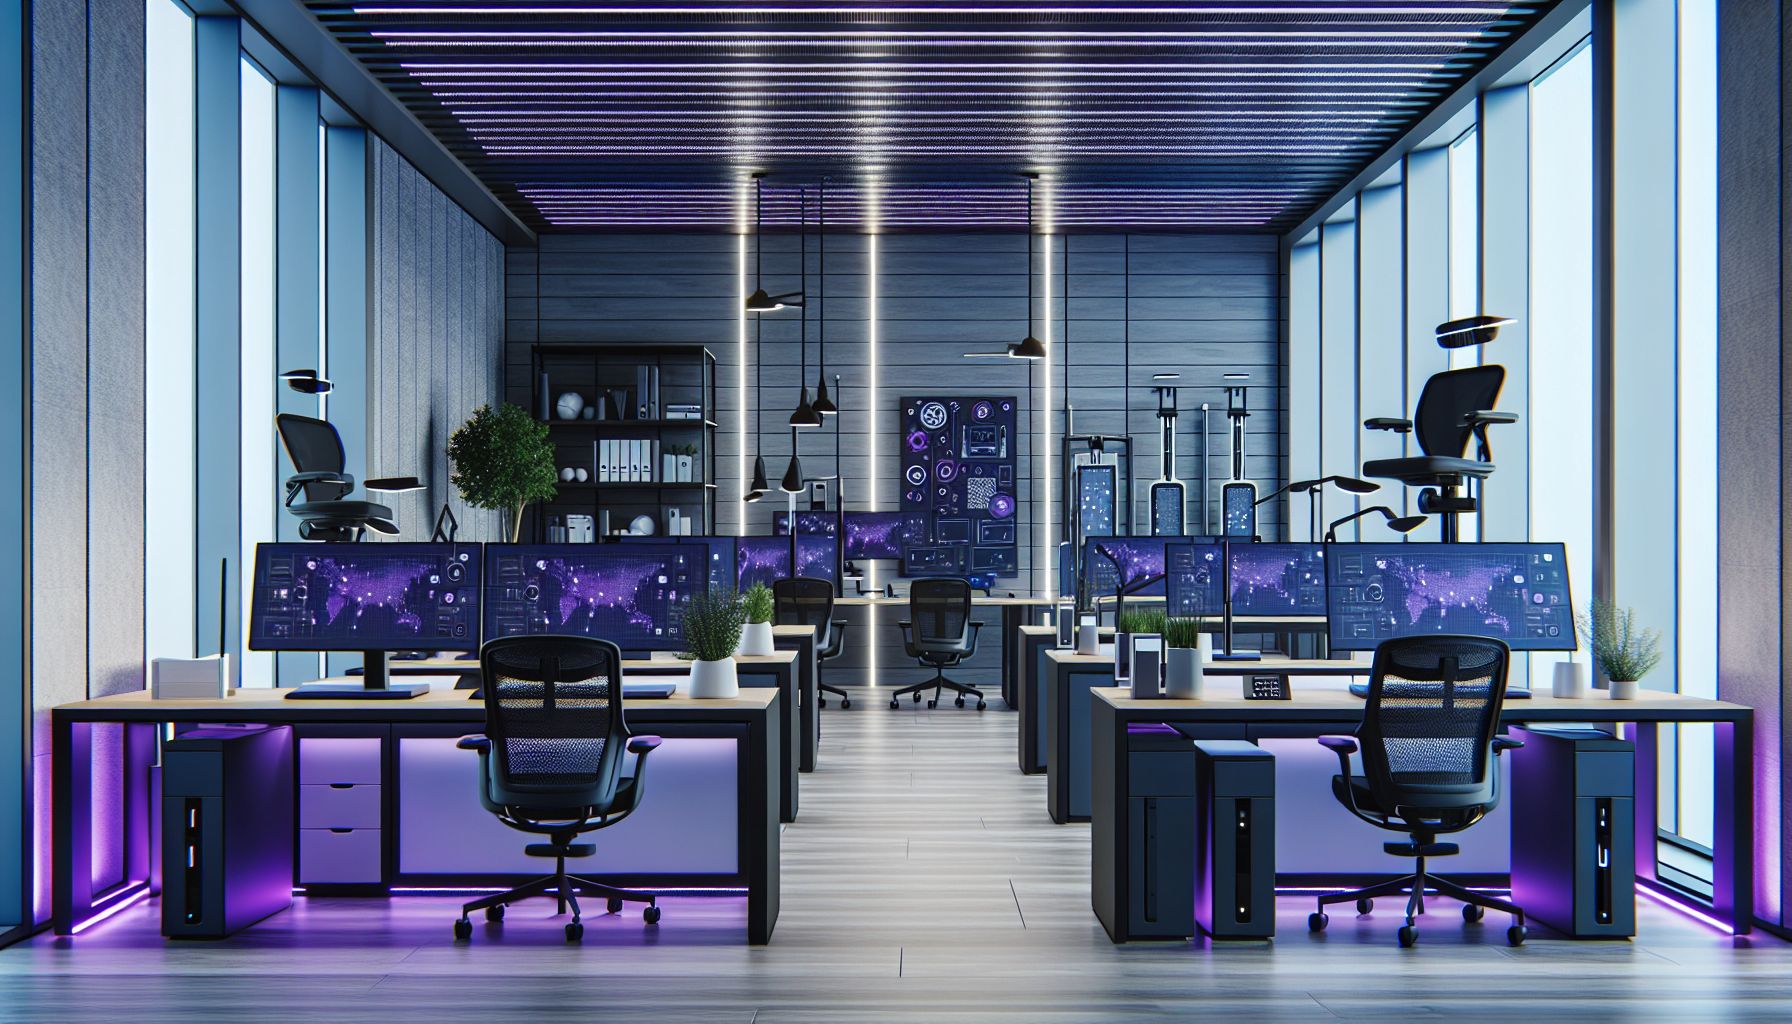 Bureau contemporain technologique violet avec bureaux debout automatises tableaux blancs interactifs assistants robotiques et eclairage intelligent style realiste.jpeg